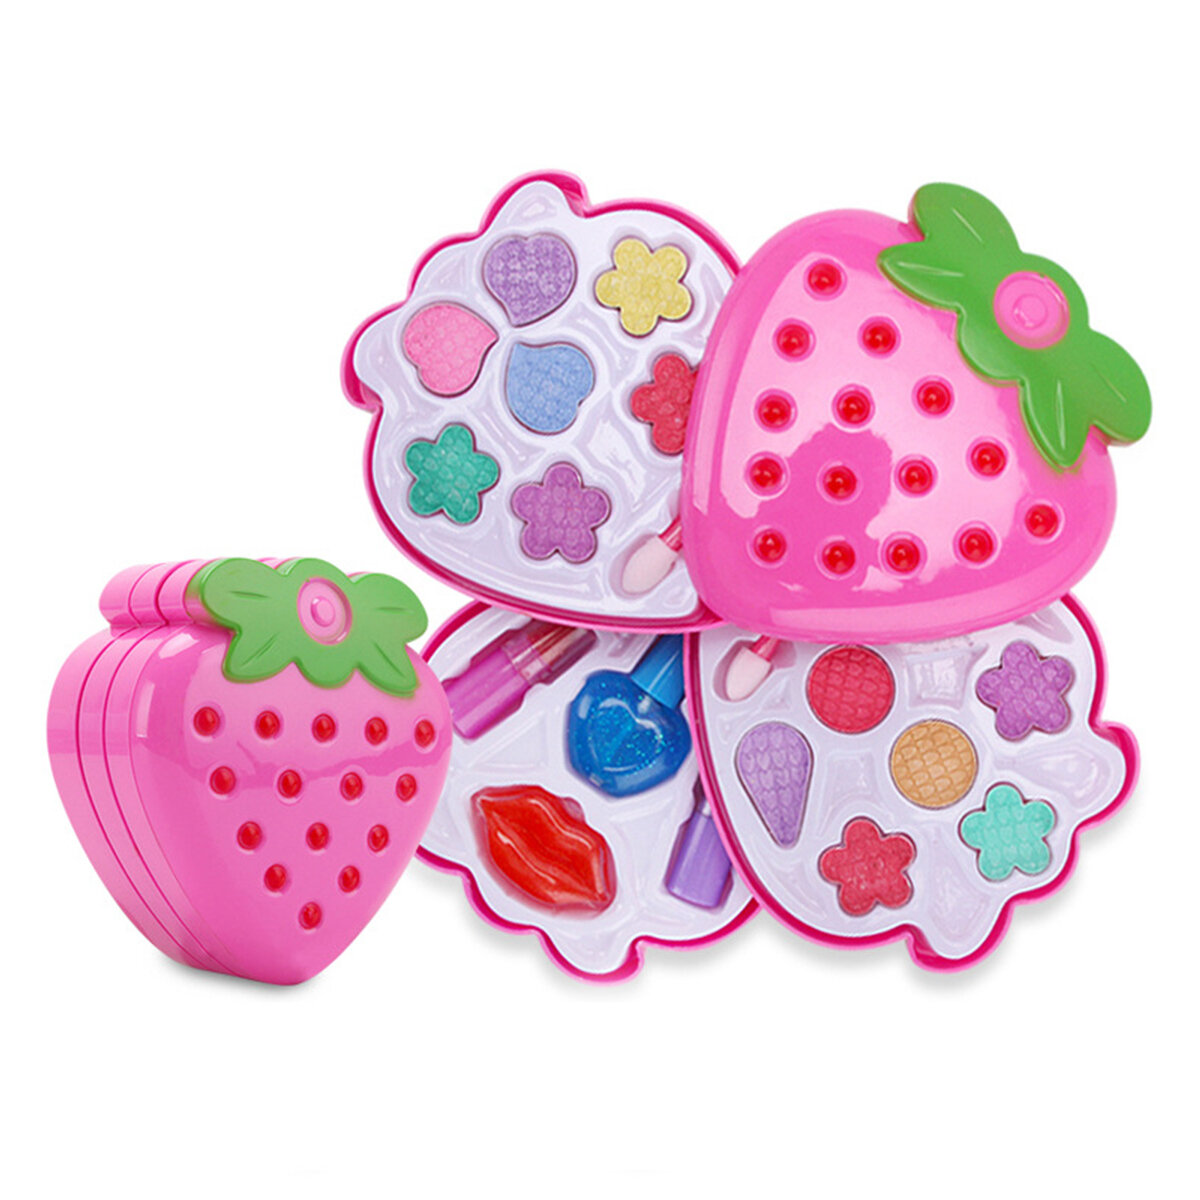 مجموعة فراشي مكياج الاميرة للاطفال من فراولة للاطفال